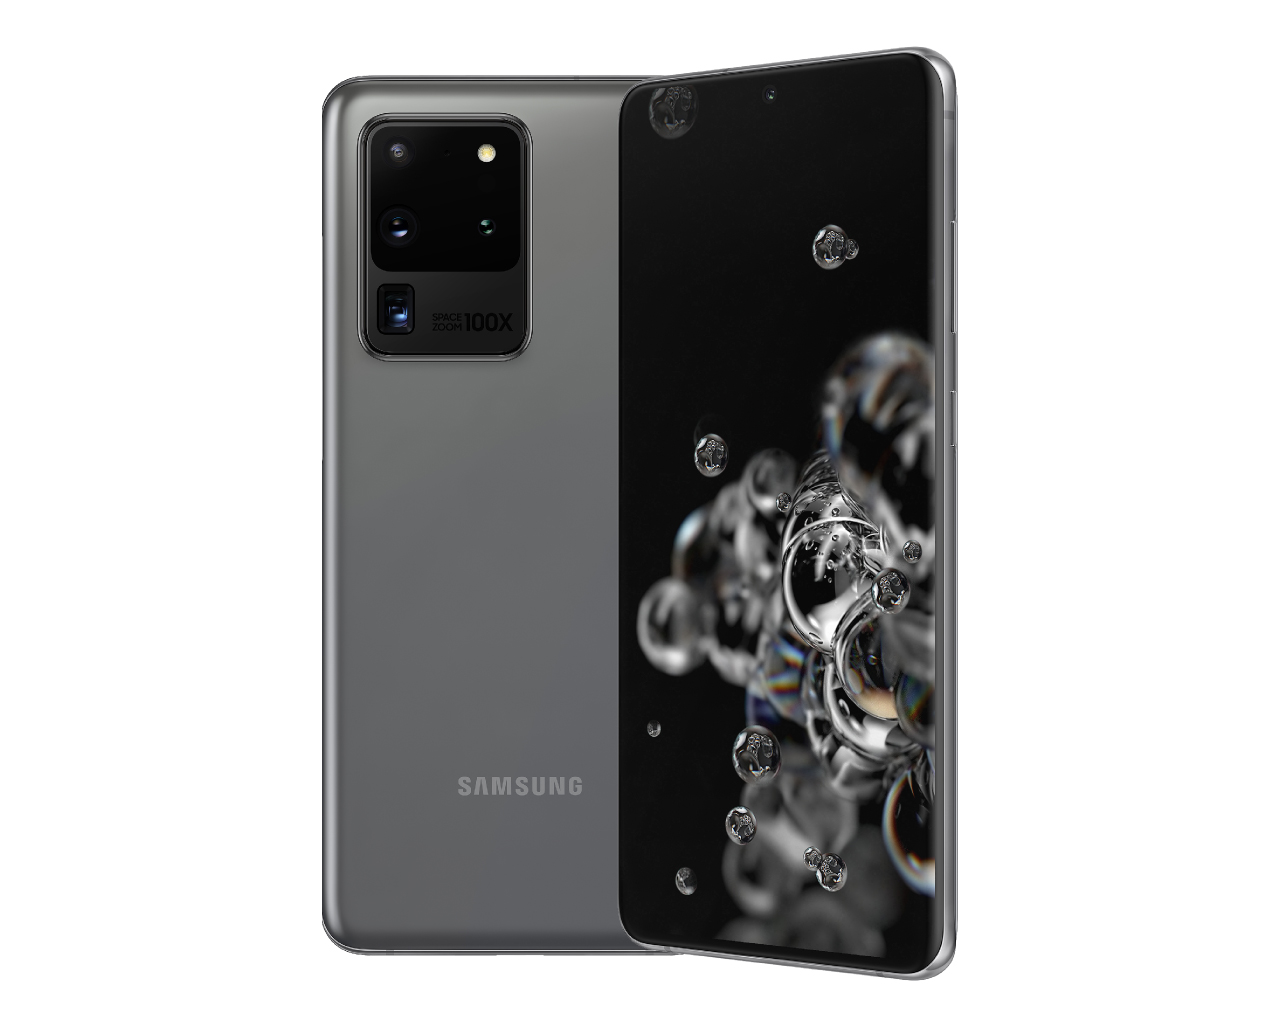 Samsung Galaxy S20 Ultra - Notebookcheck.net External Reviews